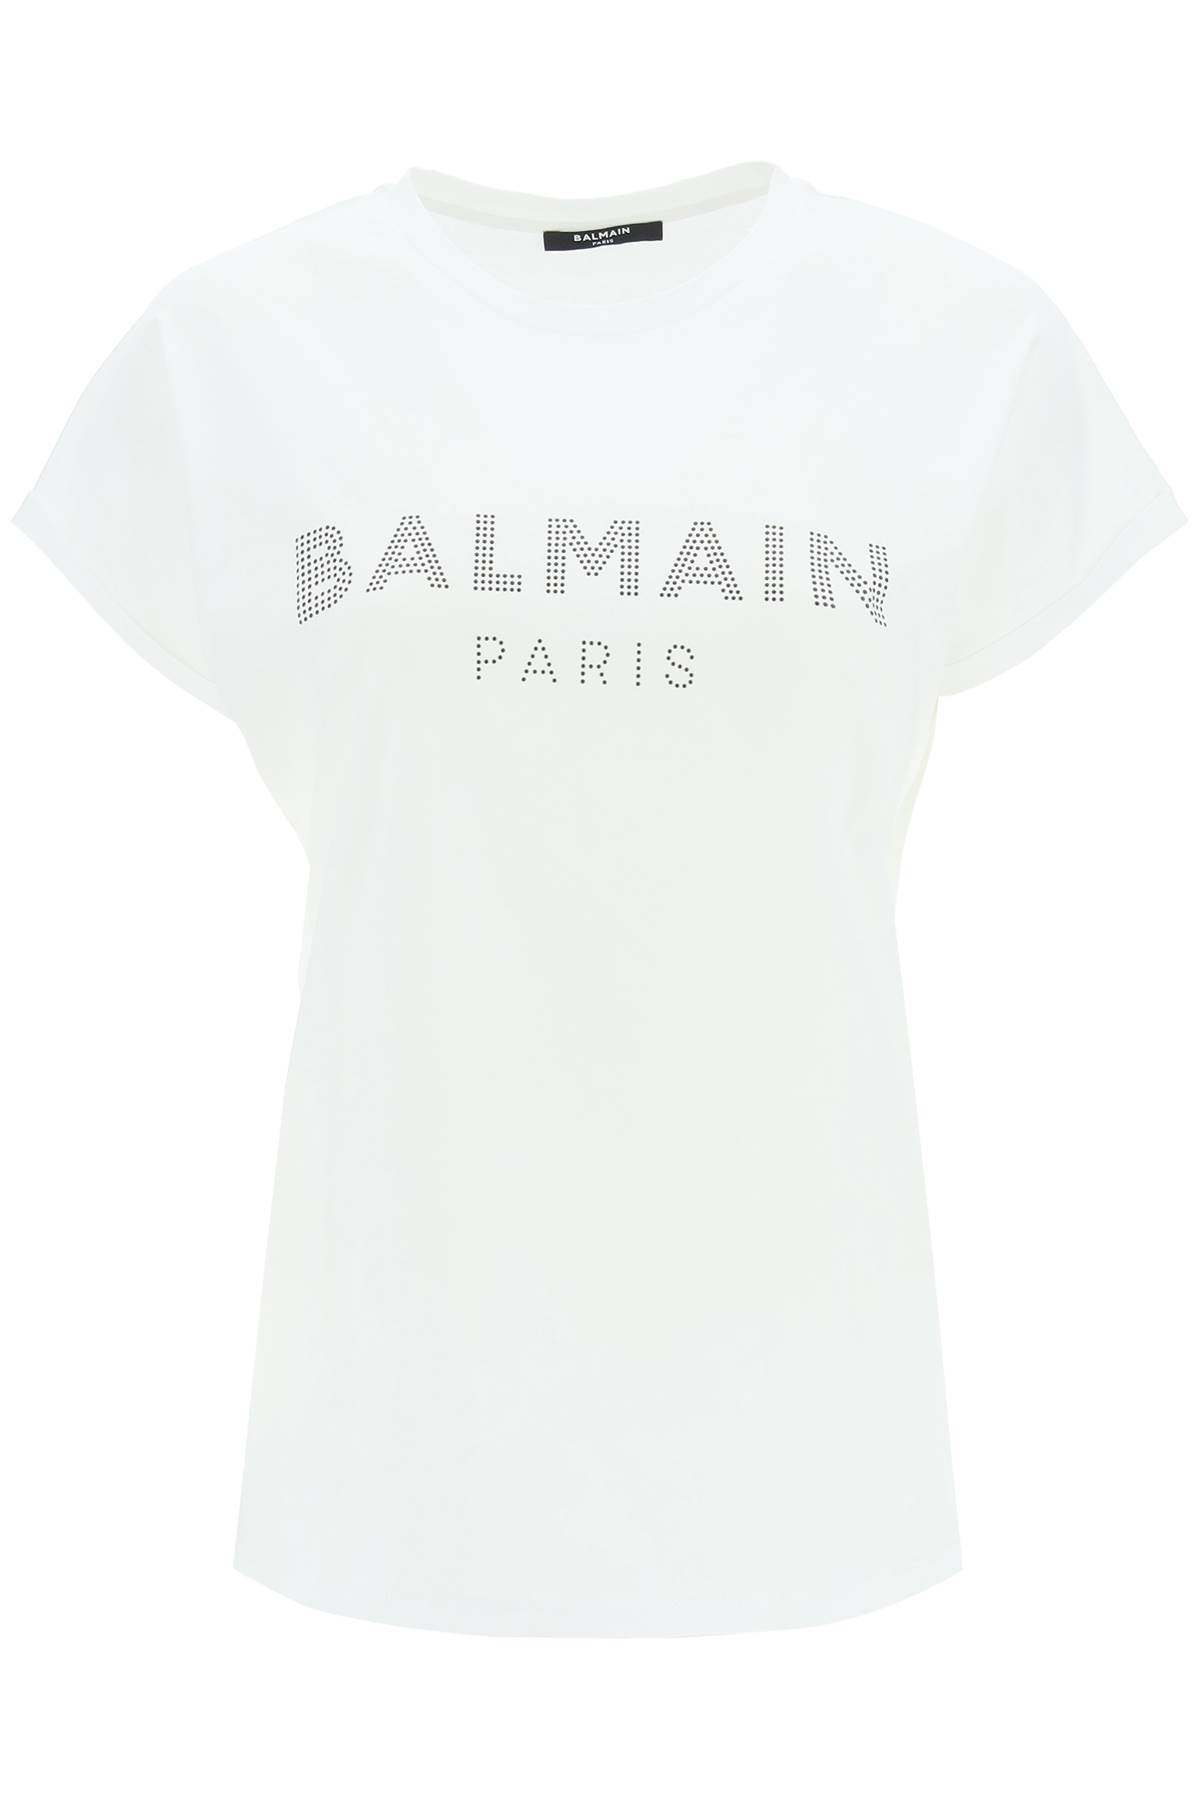 Balmain Eco-design T-shirt